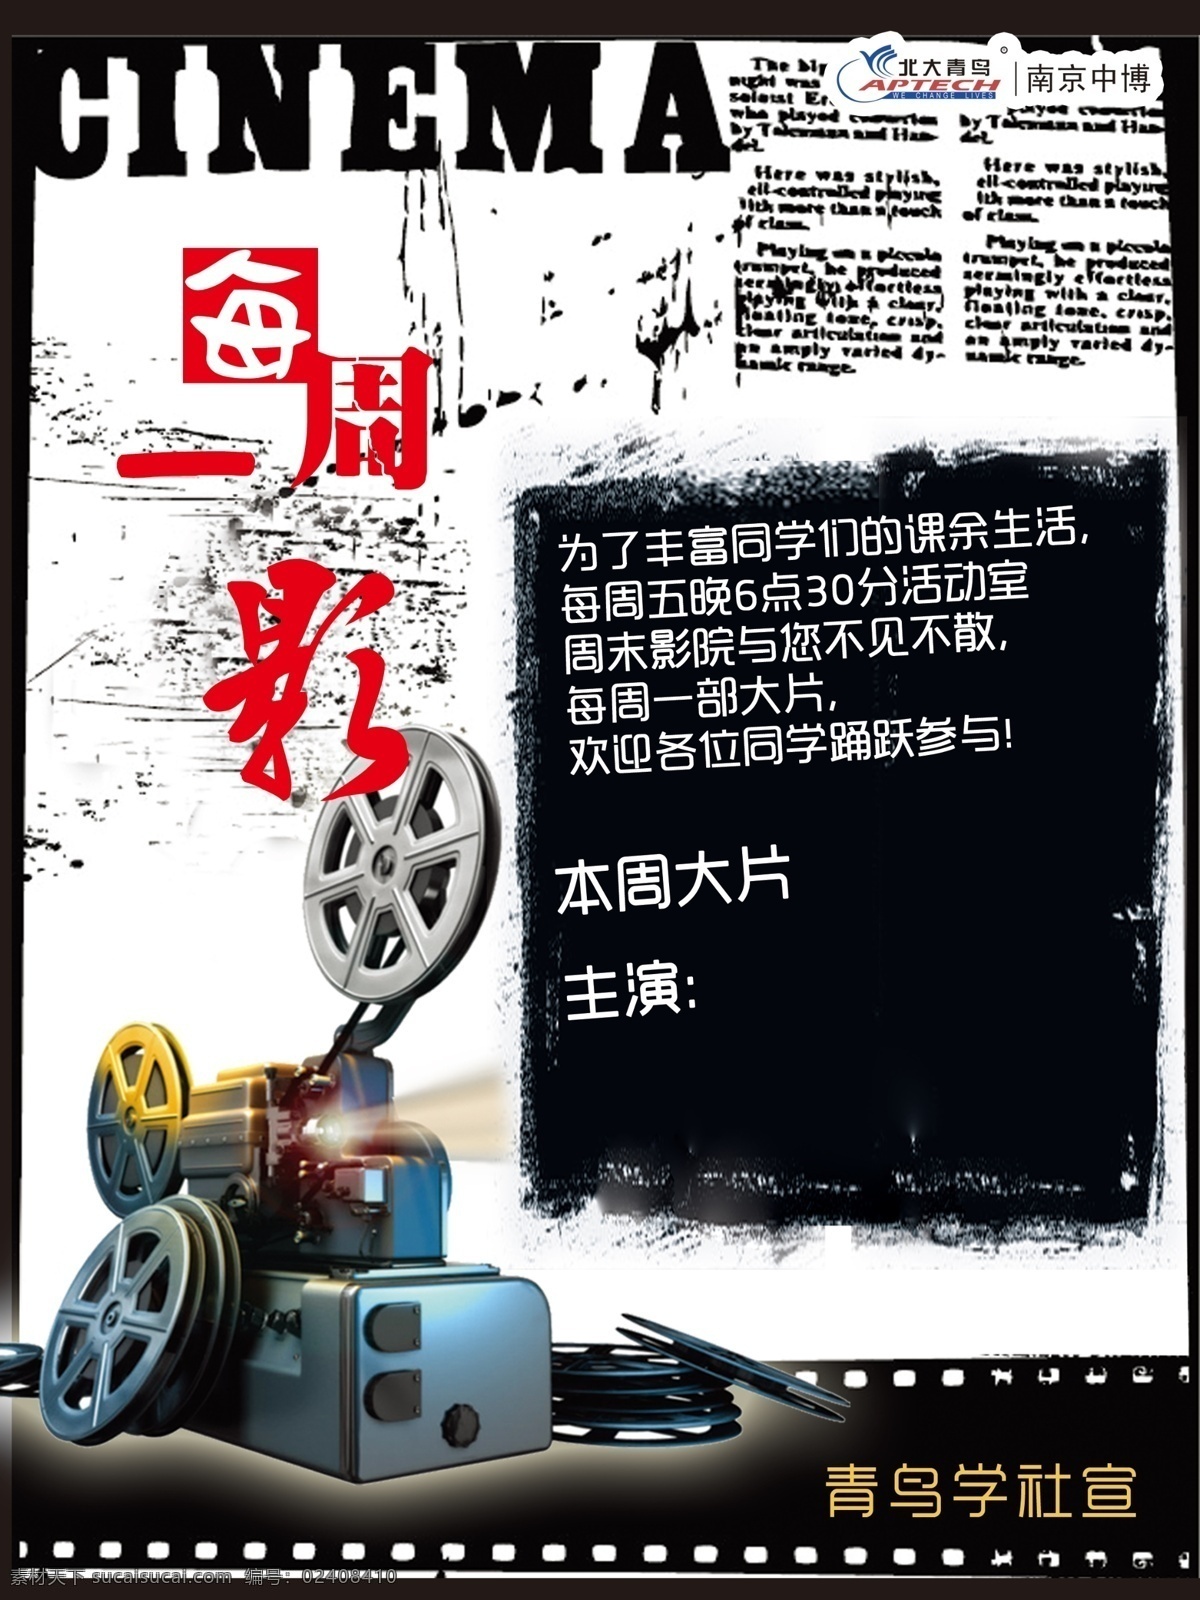 电影海报 北大青鸟 每周一影 放映机 黑白 老电影 胶卷 广告设计模板 源文件